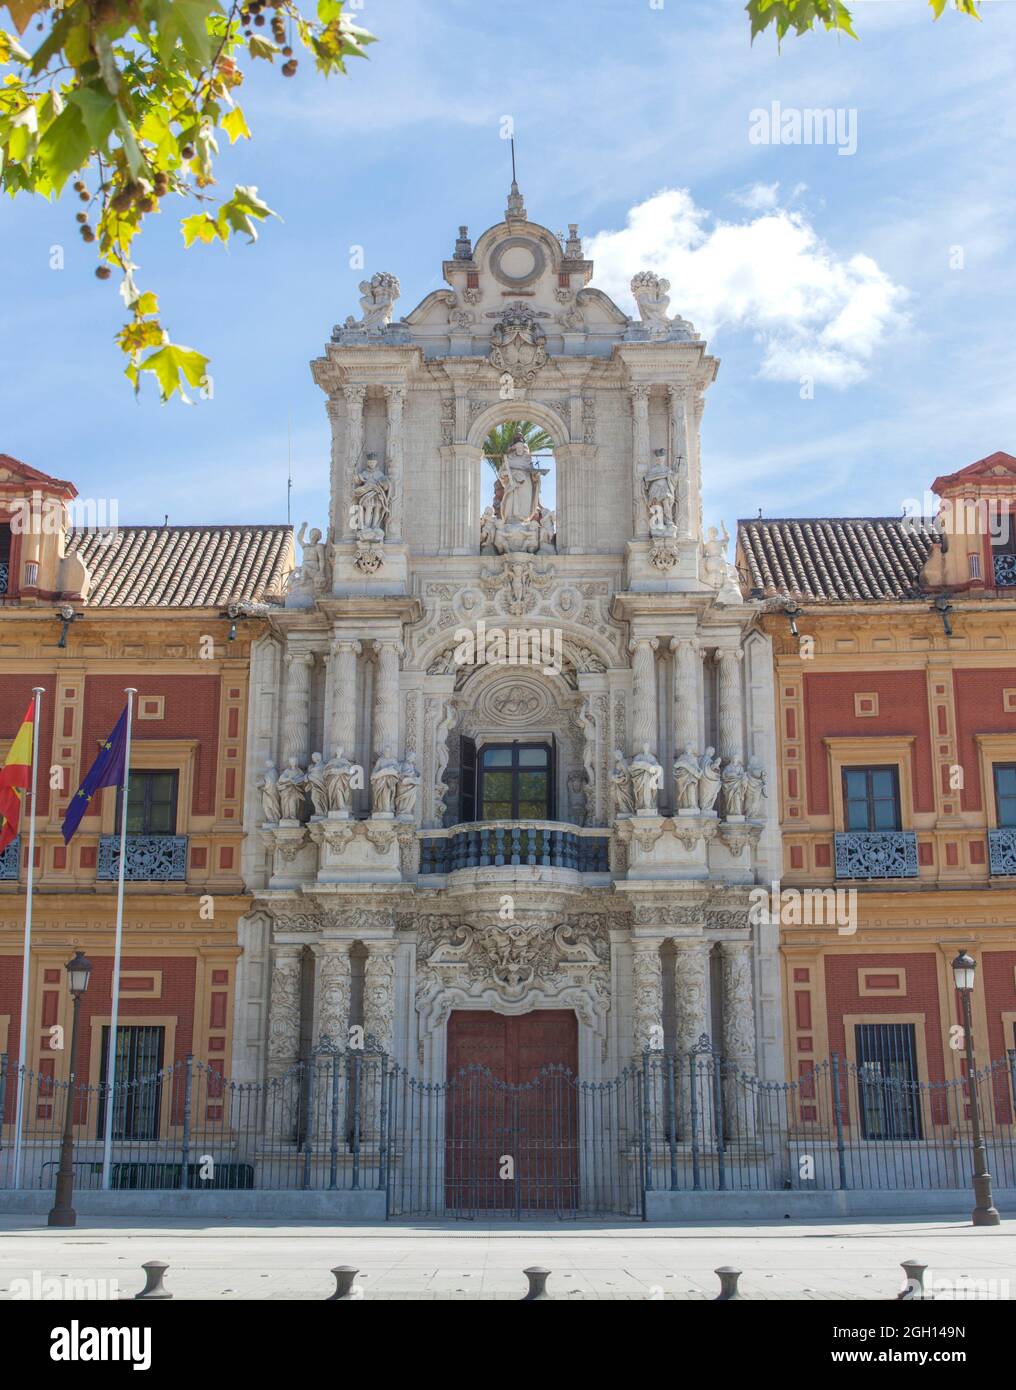 Le Palais de San Telmo Séville, Espagne. Siège de la présidence du gouvernement régional andalou. Banque D'Images